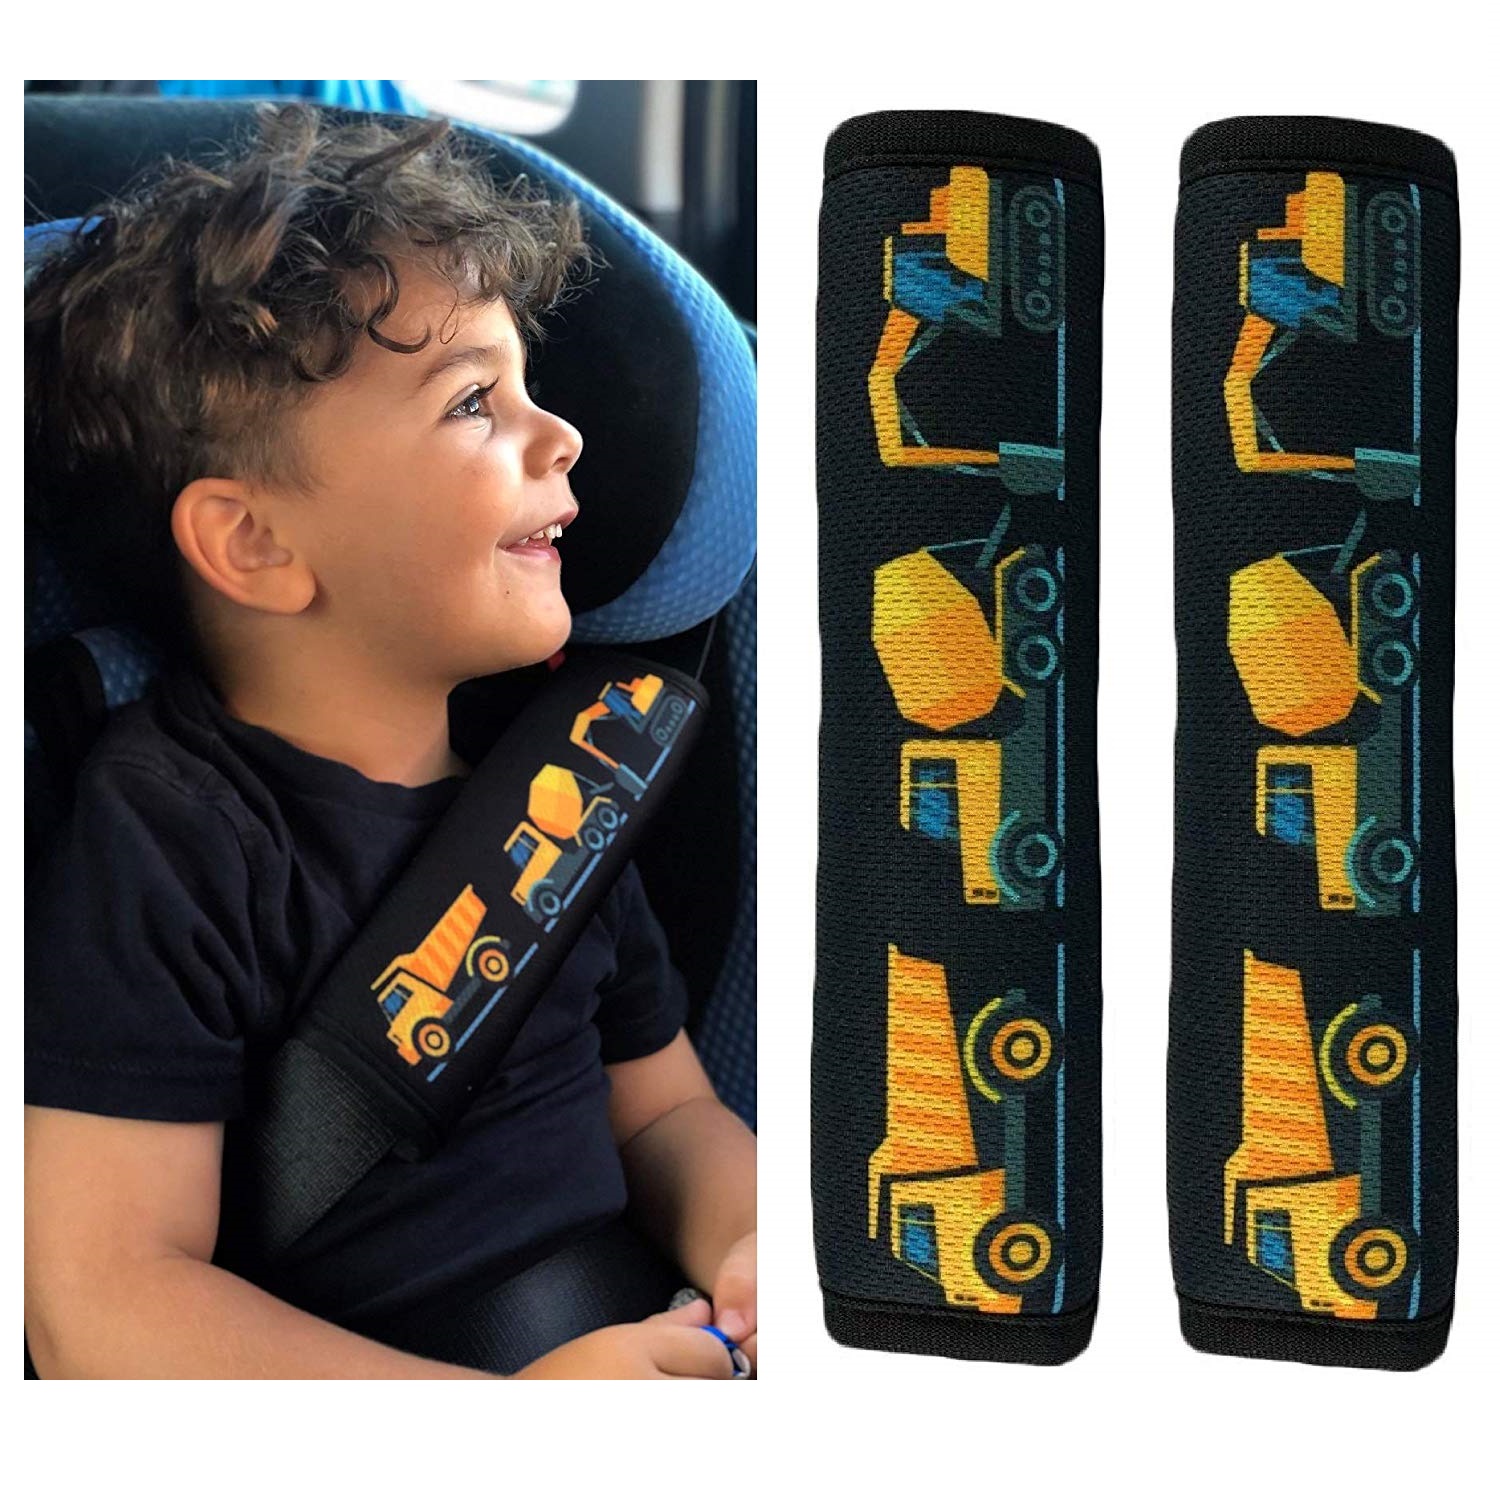 Kaufen Sie 1x HECKBO Kinder Auto Gurtpolster Gurtschutz mit Monster Motiv -  Sicherheitsgurt Polster für Kinder und Babys- Ideal für jeden Gurt  Autositzerhöhungen Kinder Fahrradanhänger Flugzeug zu Großhandelspreisen